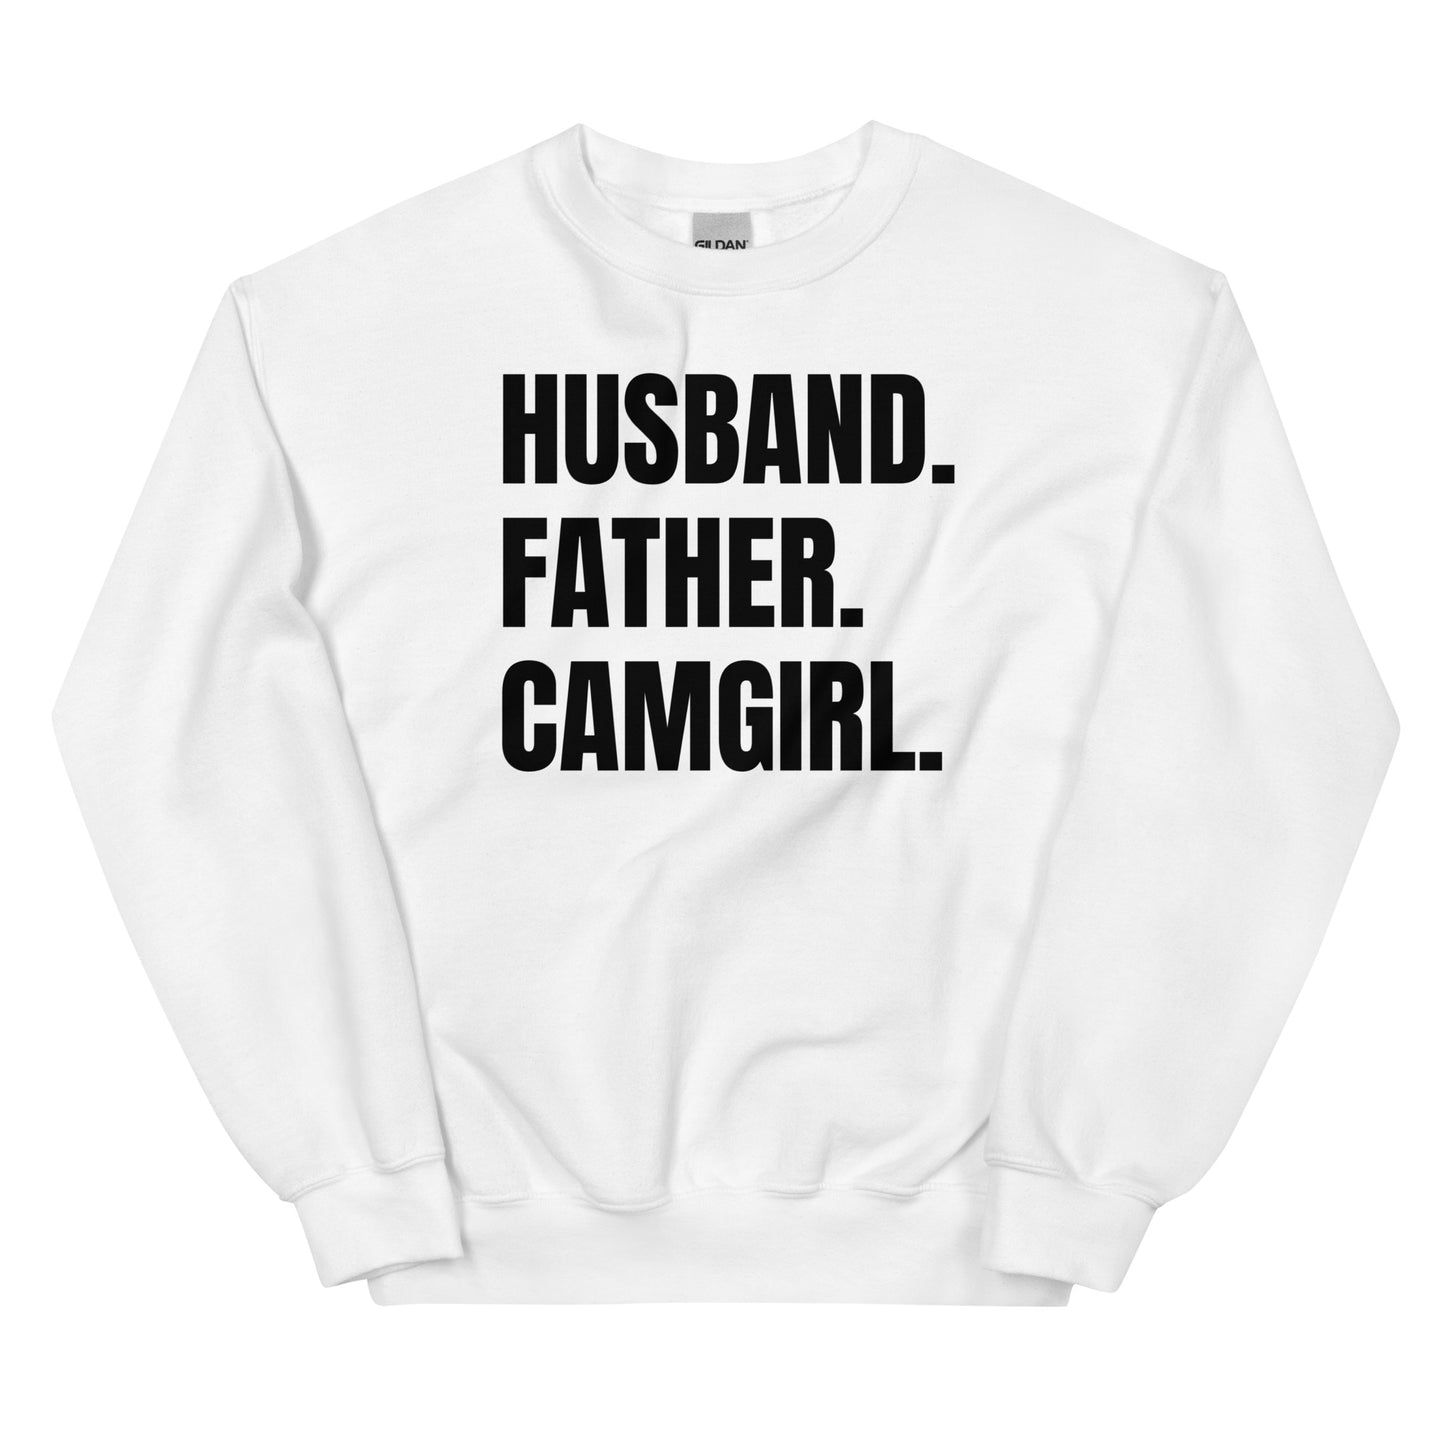 Husband. Father. Camgirl. Unisex Sweatshirt